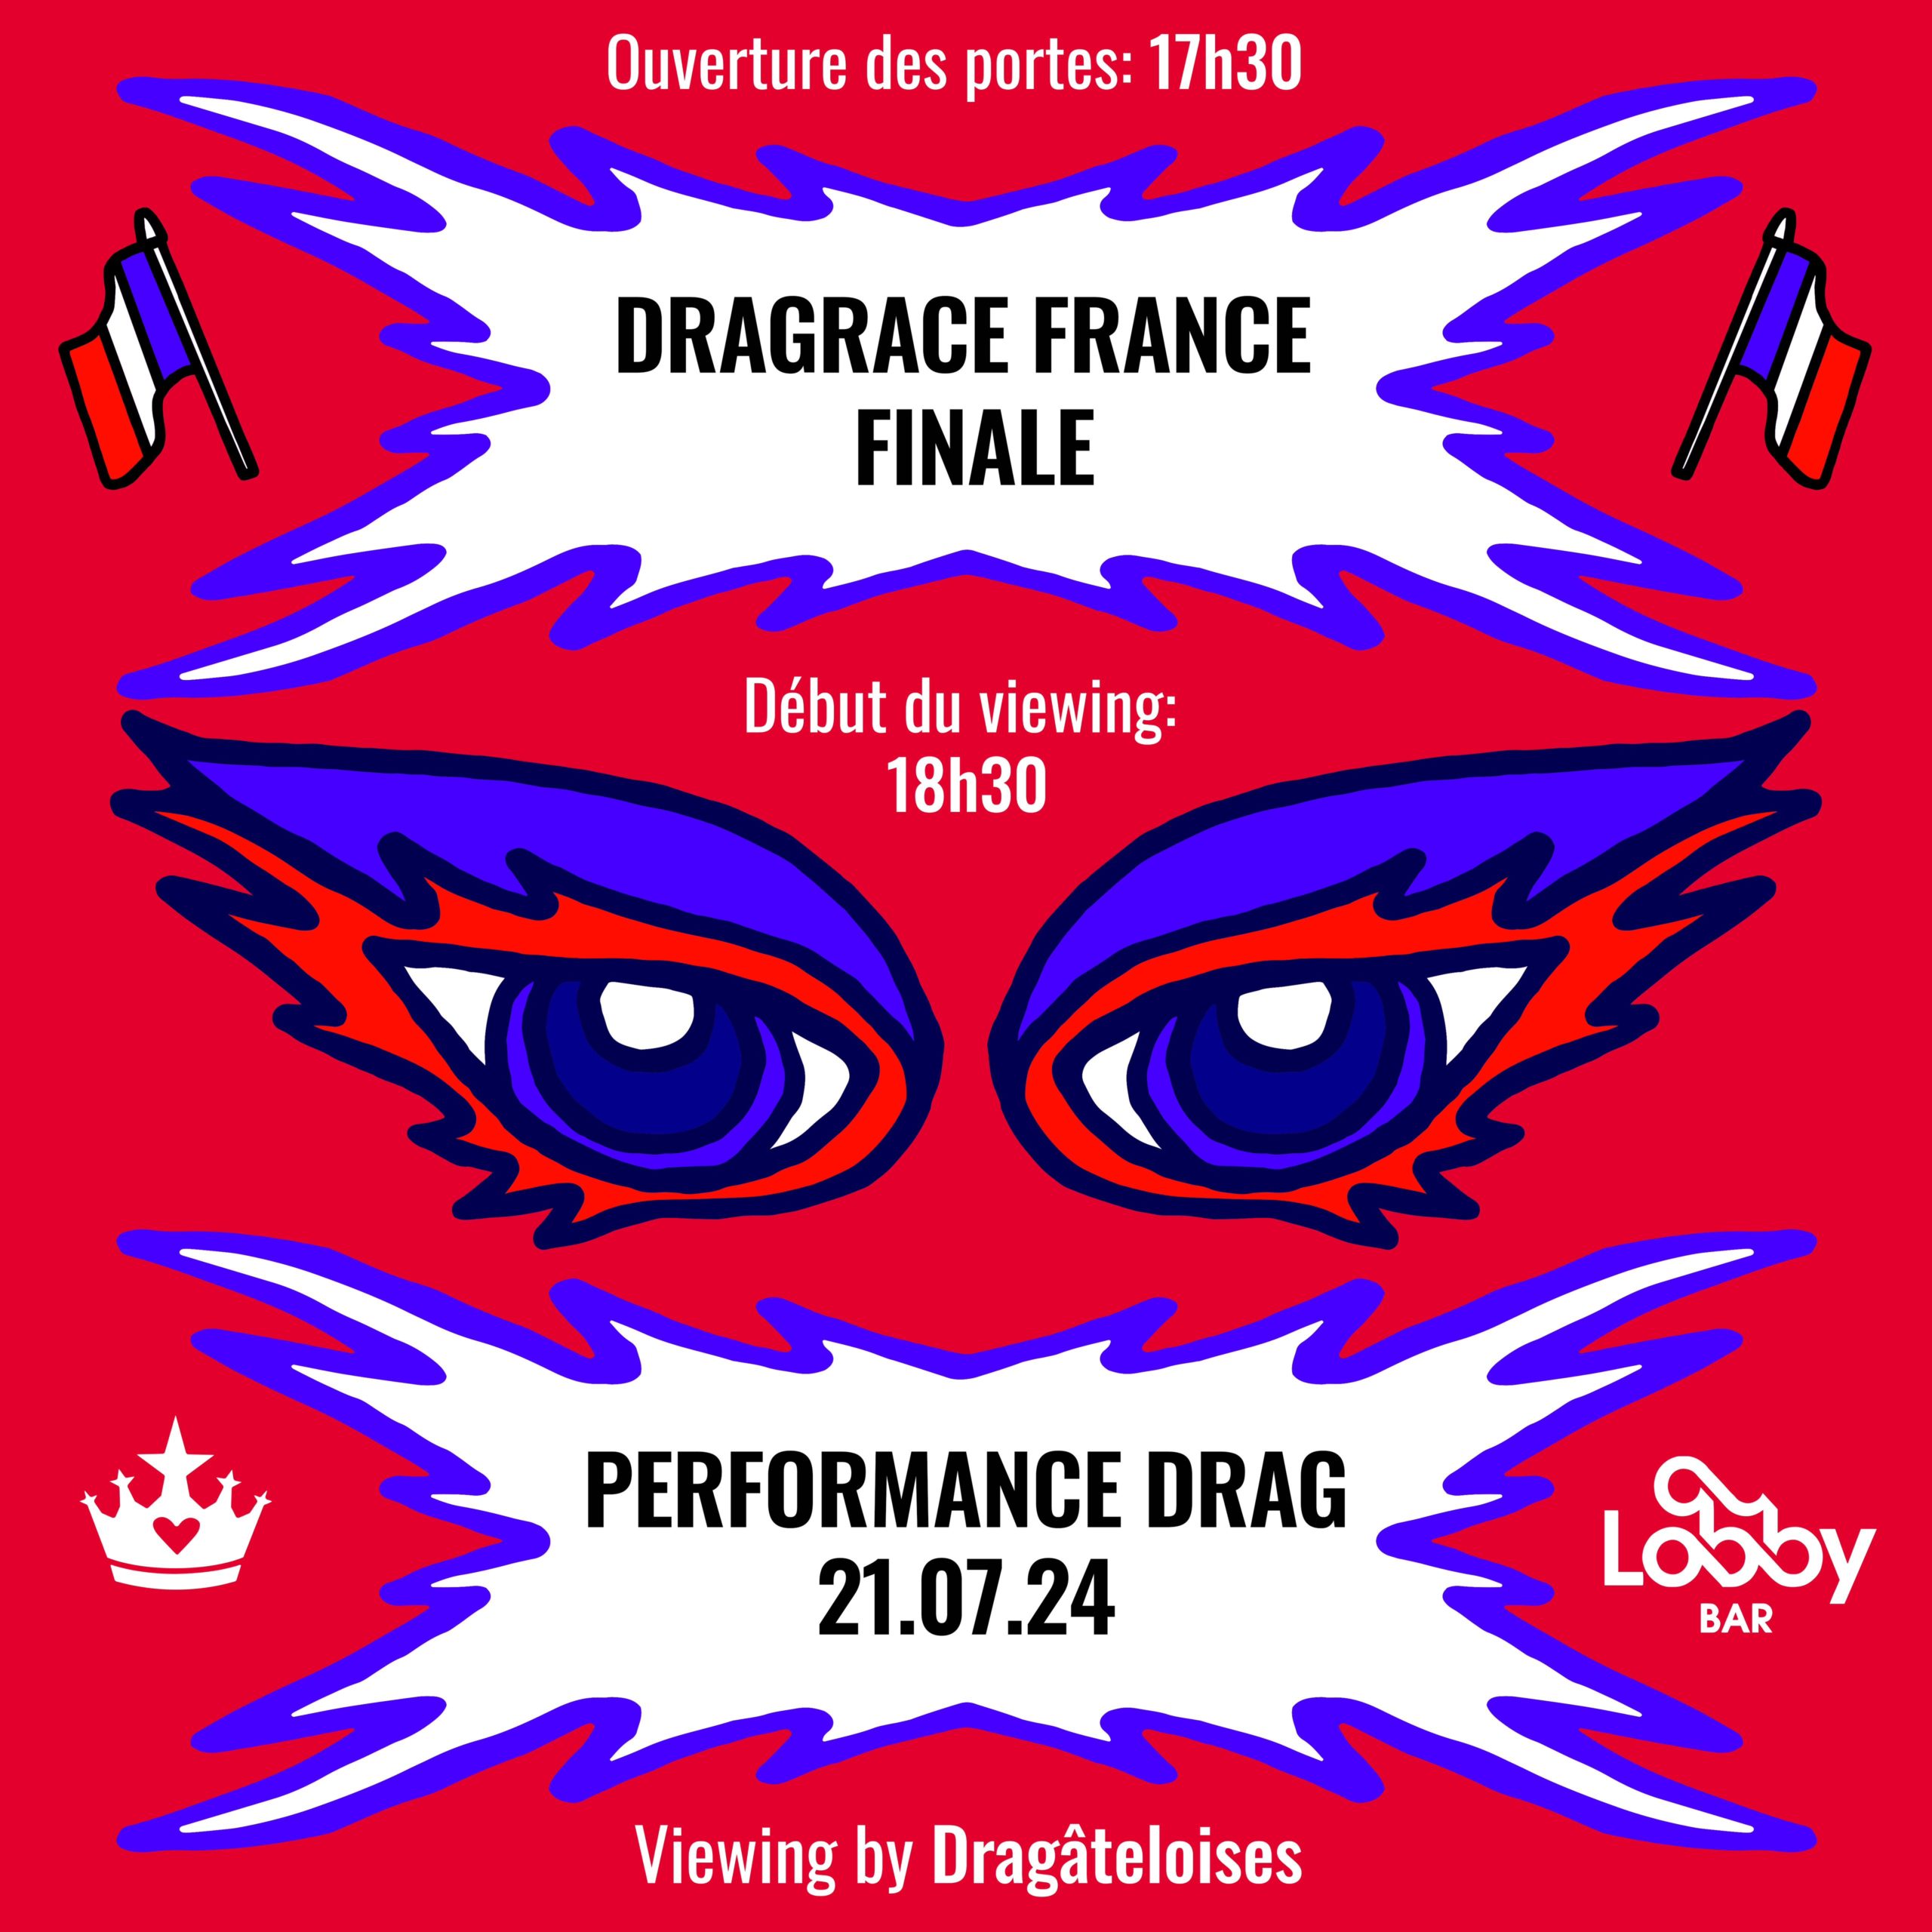 Affiche du Viewing du finale de la saison 3 de Drag Race France qui a lieu le 21 juillet 2024 au Lobby Bar à Neuchâtel avec performances drags.